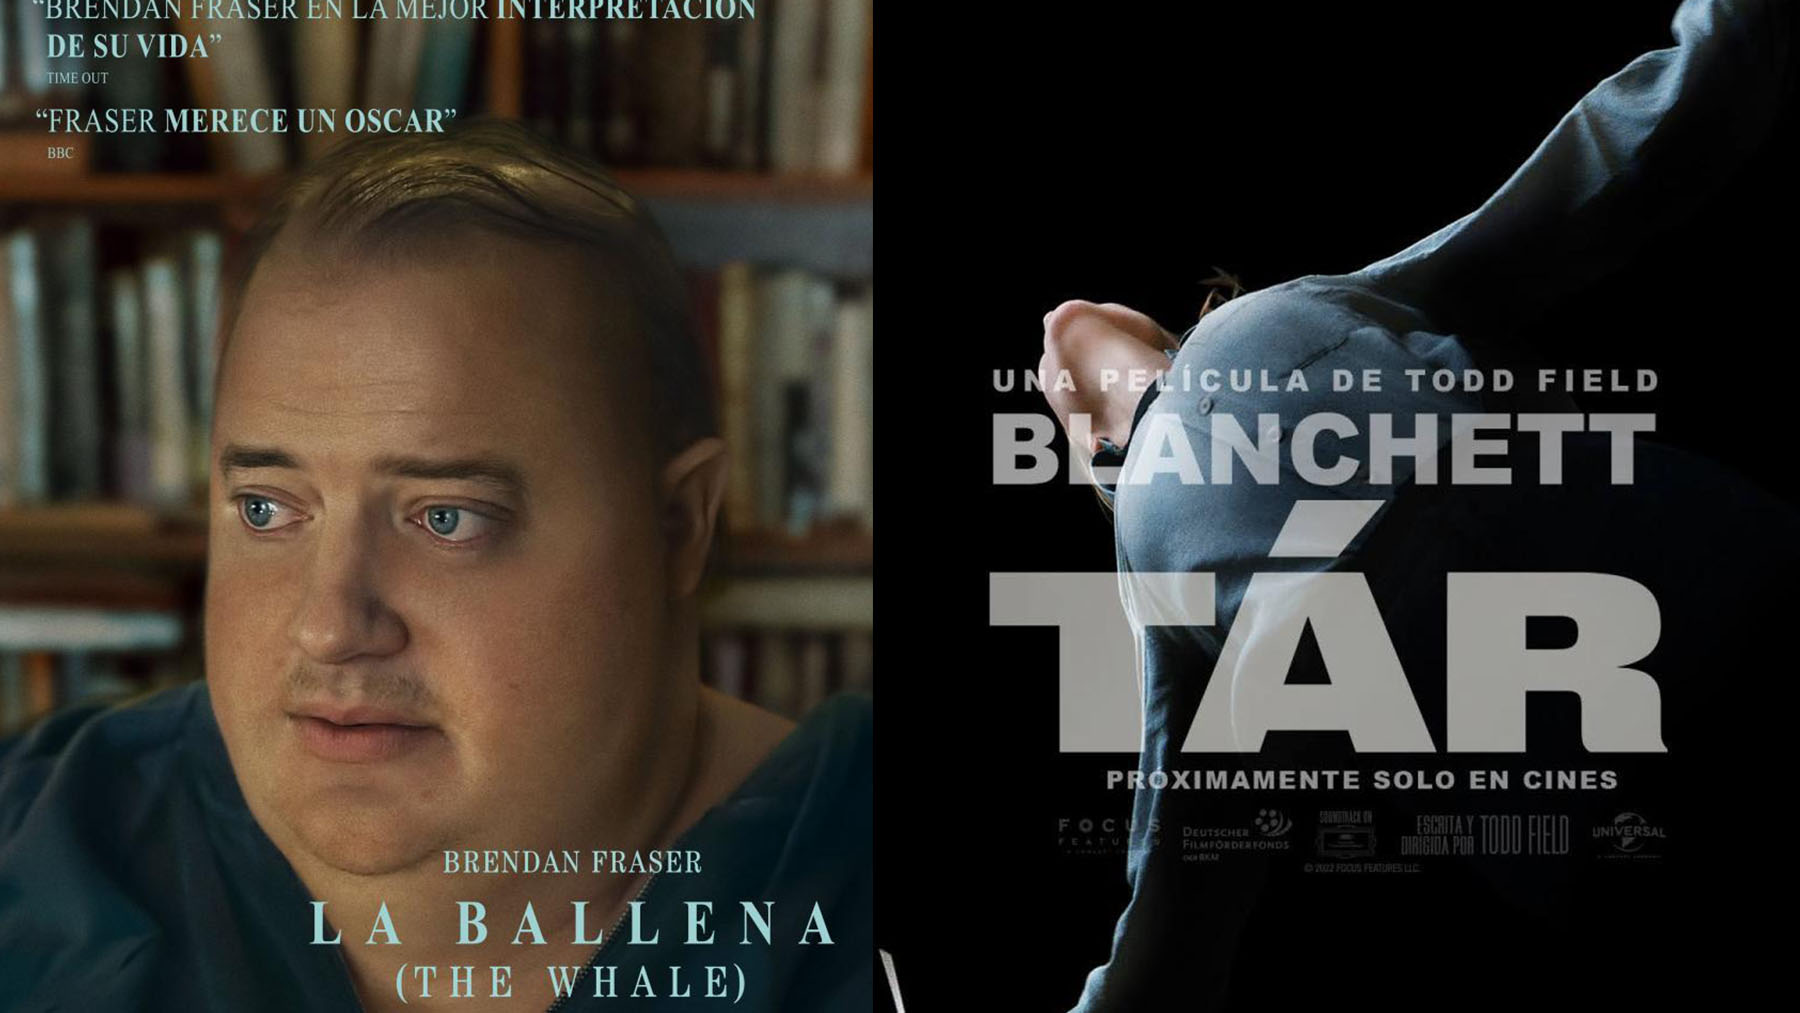 Estrenos: ‘TÁR’ y ‘La ballena’ (‘The whale’), Cate Blanchett y Brendan Fraser buscan el Oscar